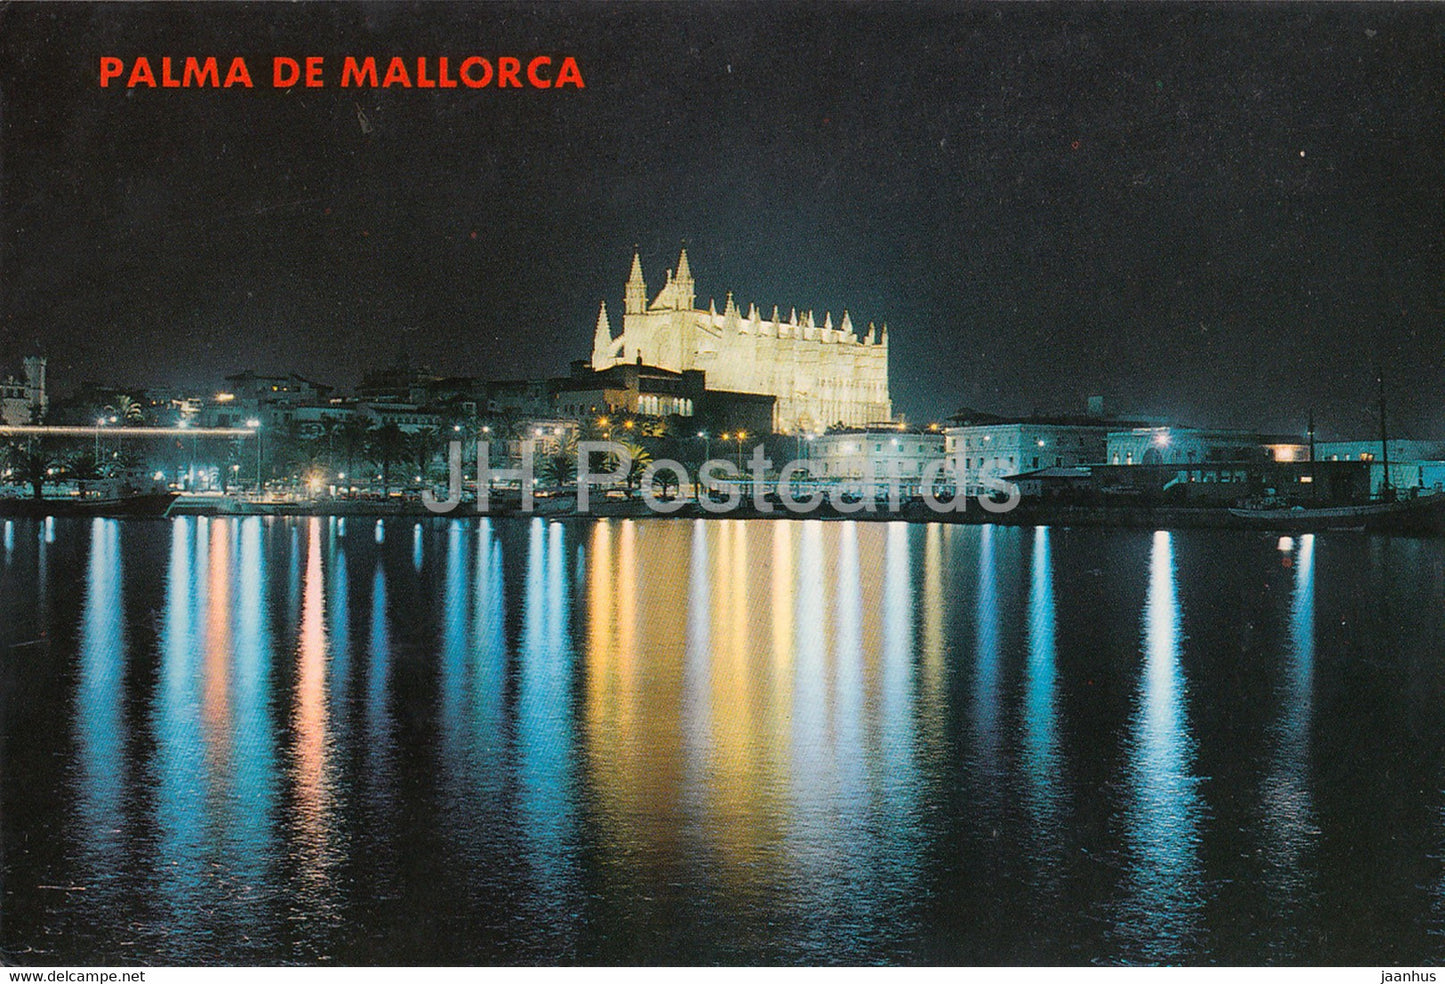 Palma de Mallorca - La Catedral - Vista Nocturna - cathedral  - 159 - Spain - used - JH Postcards